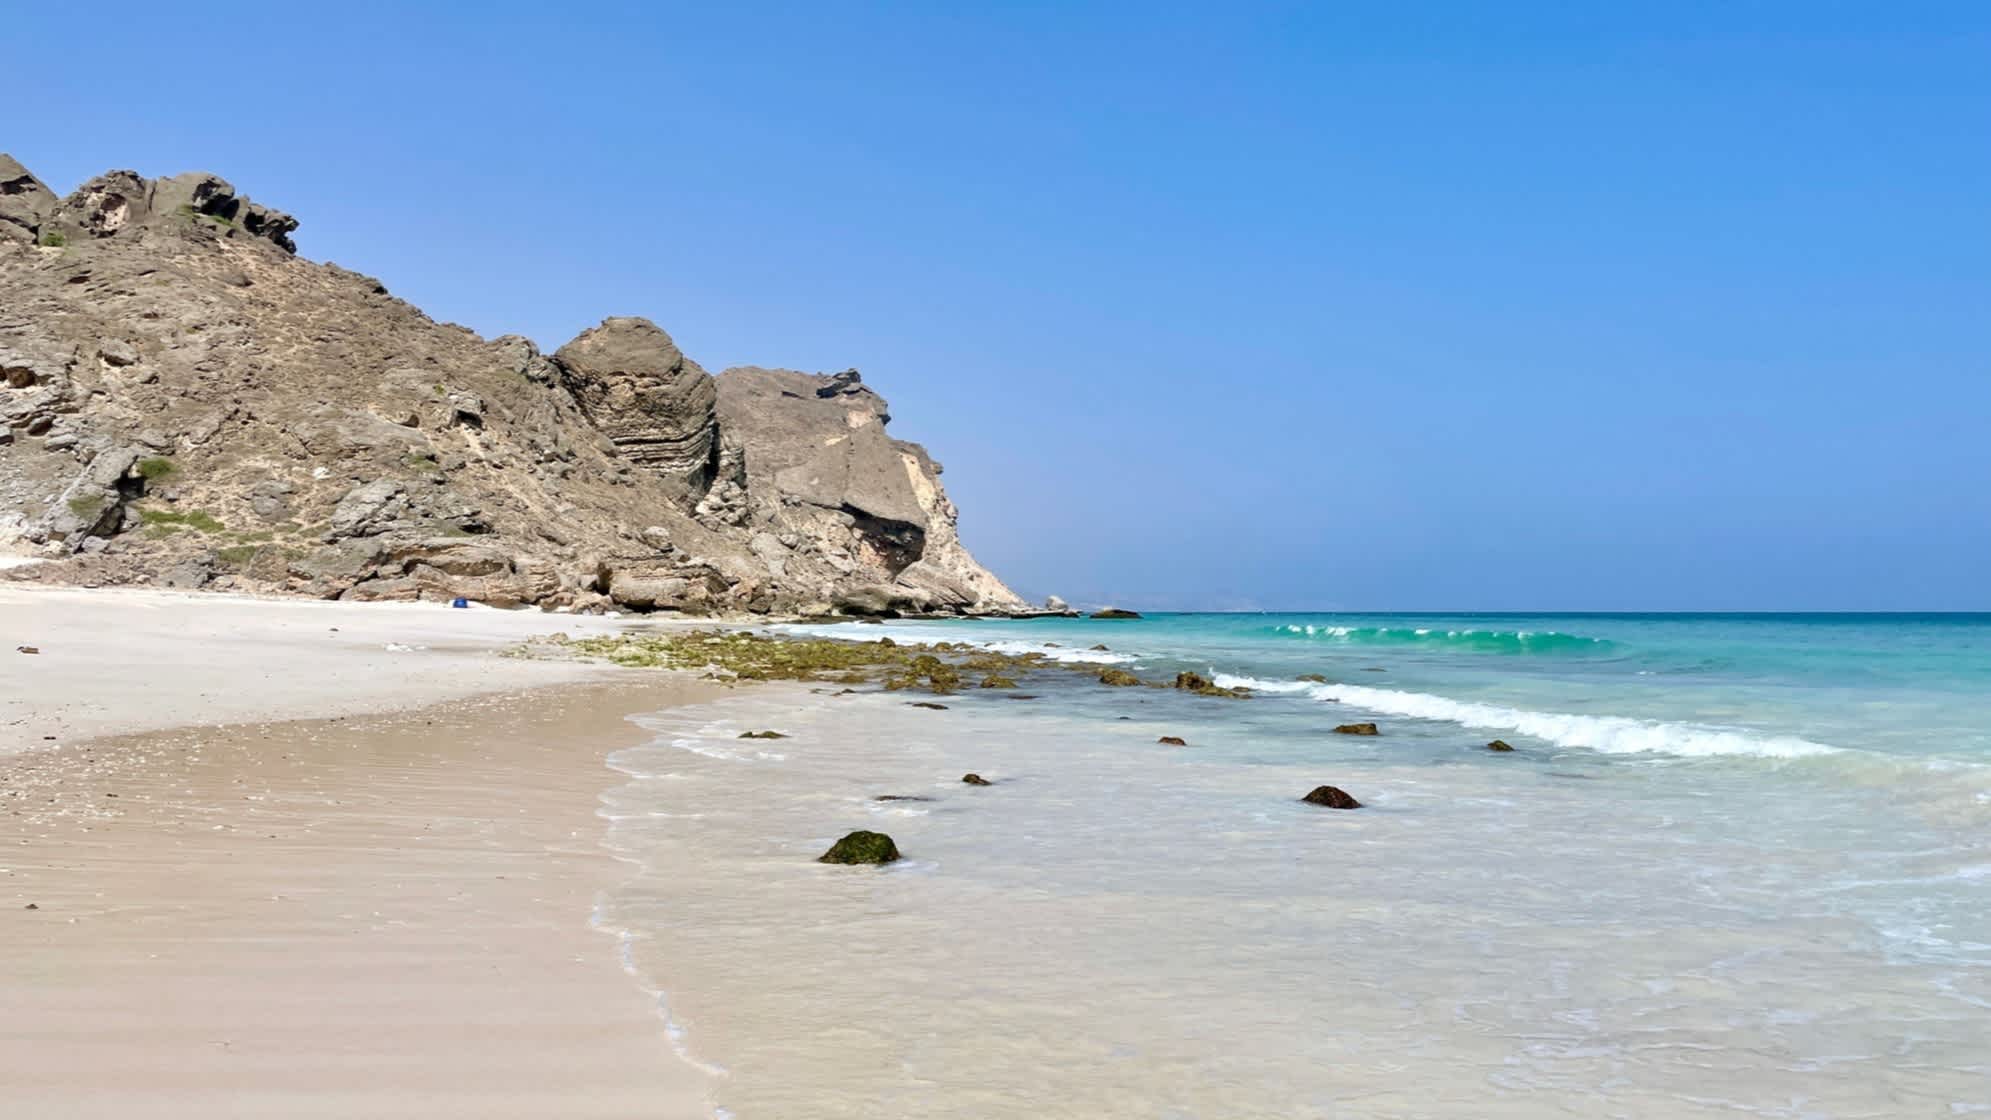 Felsige Klippe am Fazayah Beach in Salalah, Oman.